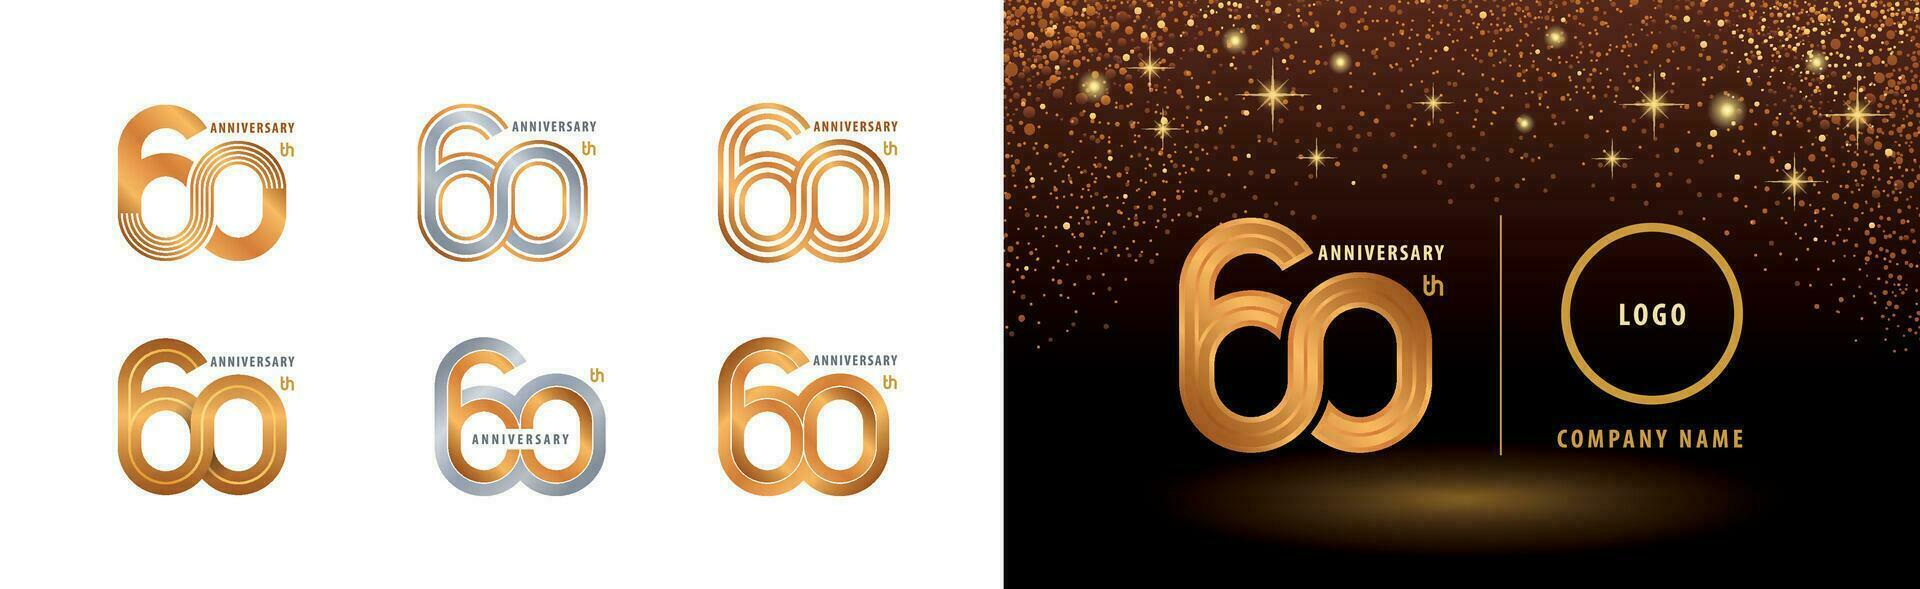 einstellen von 60 .. Jahrestag Logo Design, sechzig Jahre Jahrestag Feier vektor